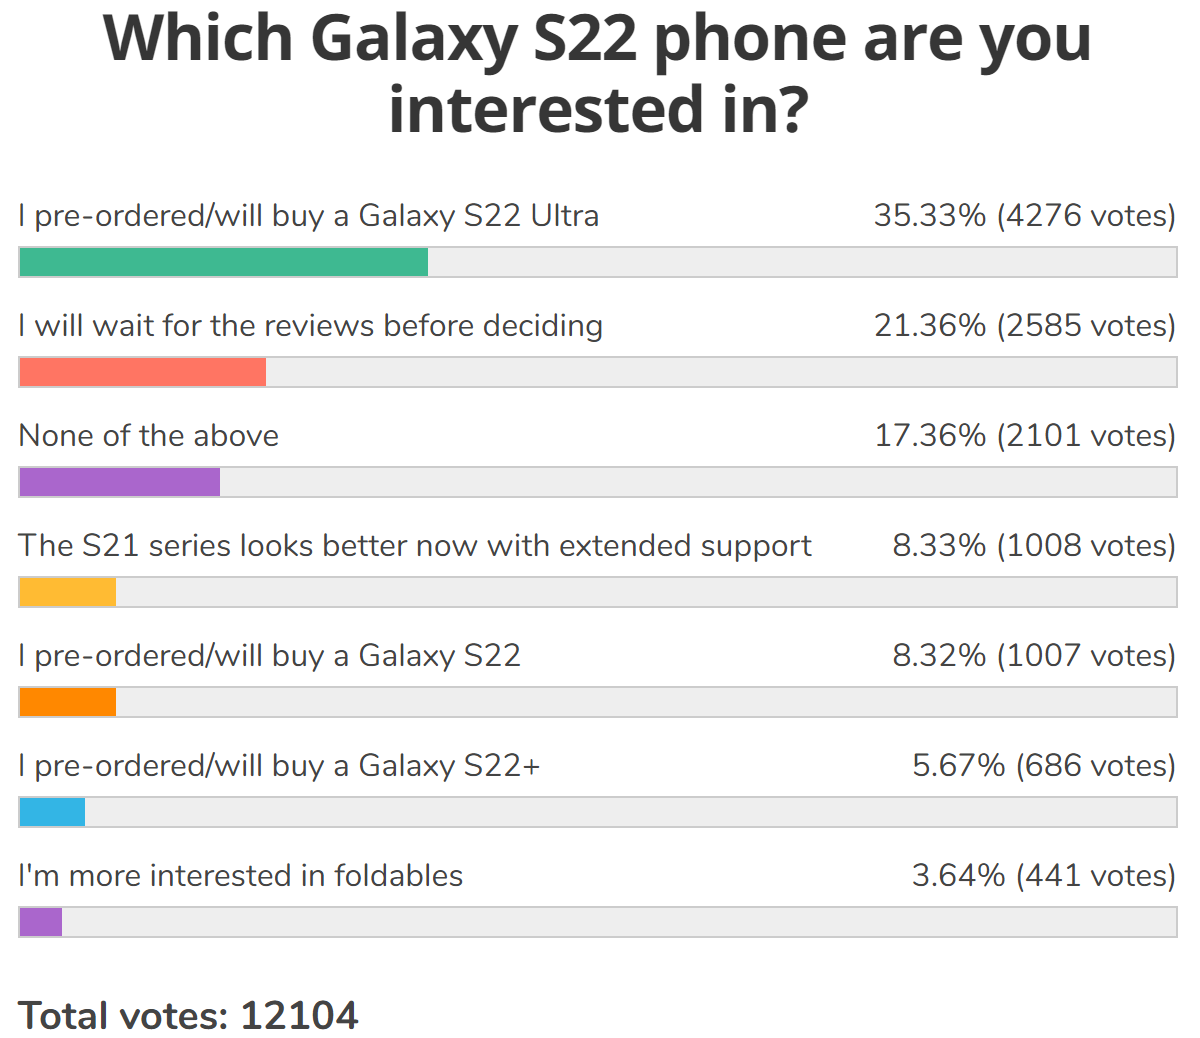 Veckoundersökningsresultat: Stark efterfrågan på Galaxy S22 Ultra, de andra två i dess skugga